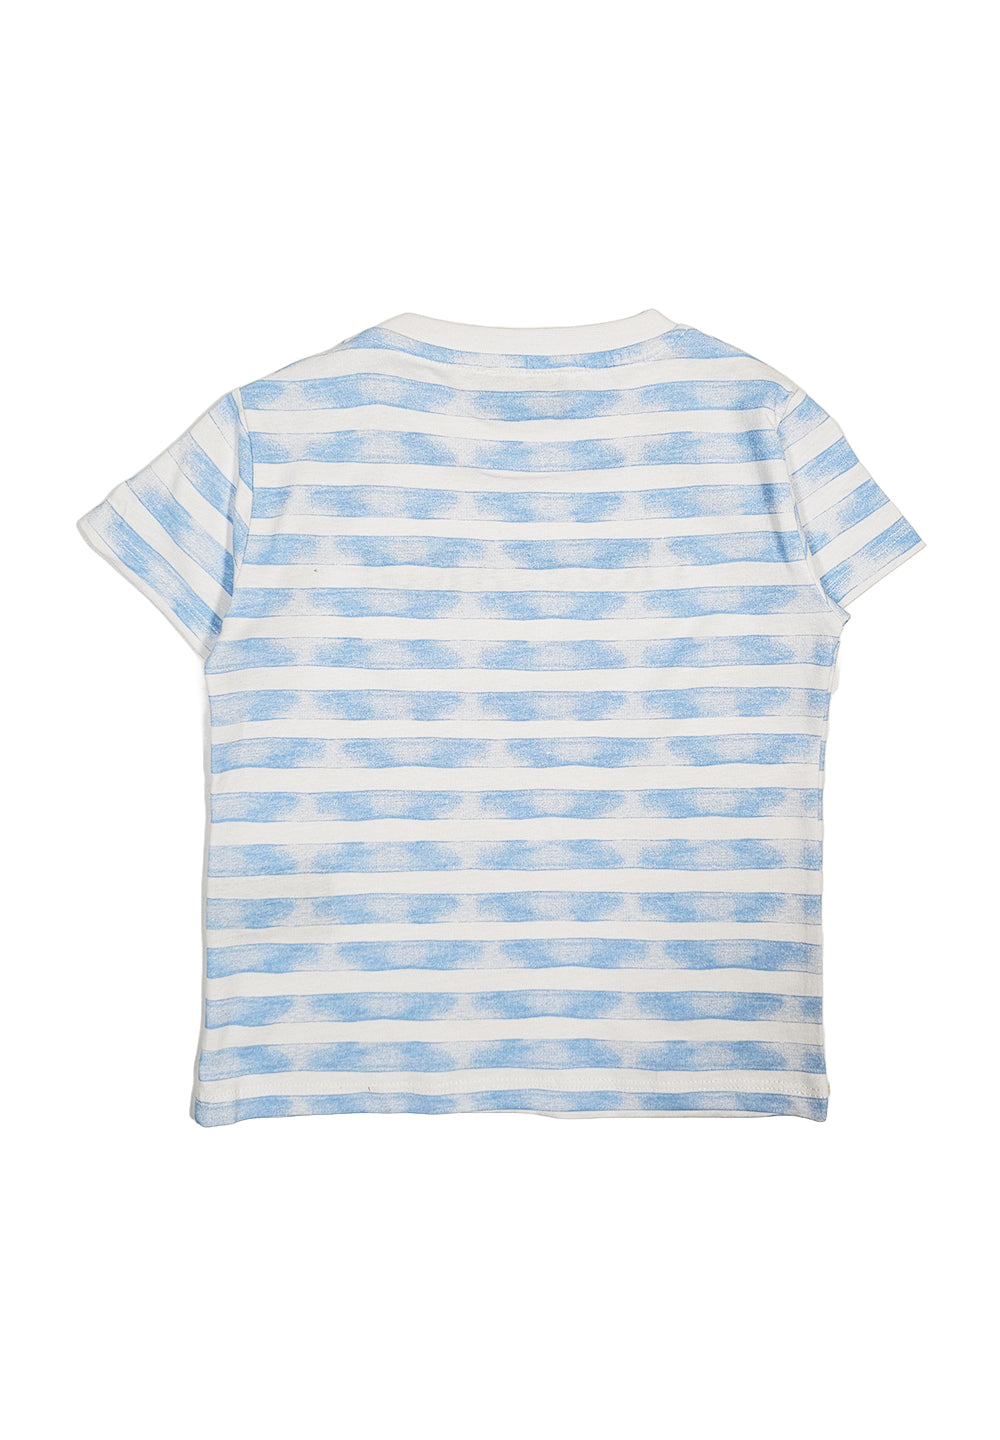 T-shirt bianco-celeste per bambino - Primamoda kids